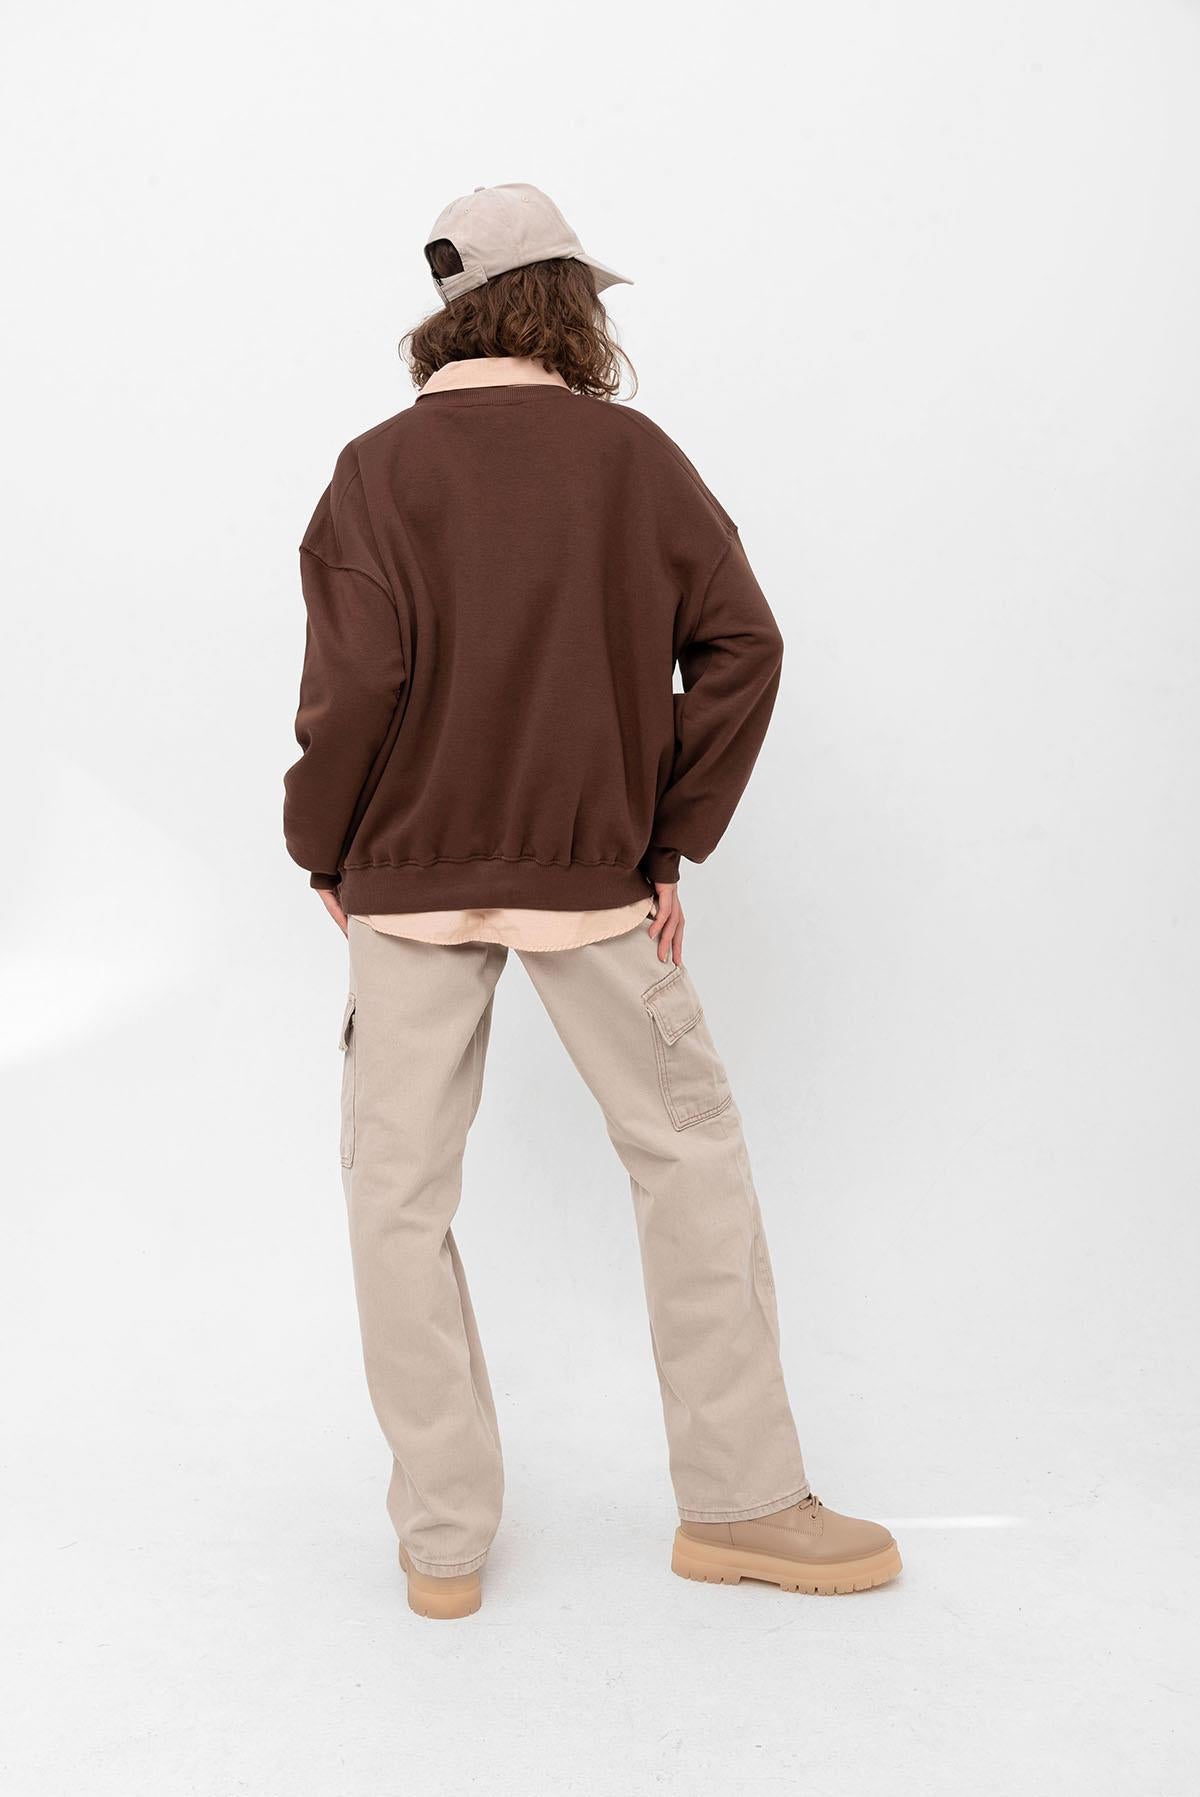 Crew Neck overlook shoulder detailed basic woman sweatshirt